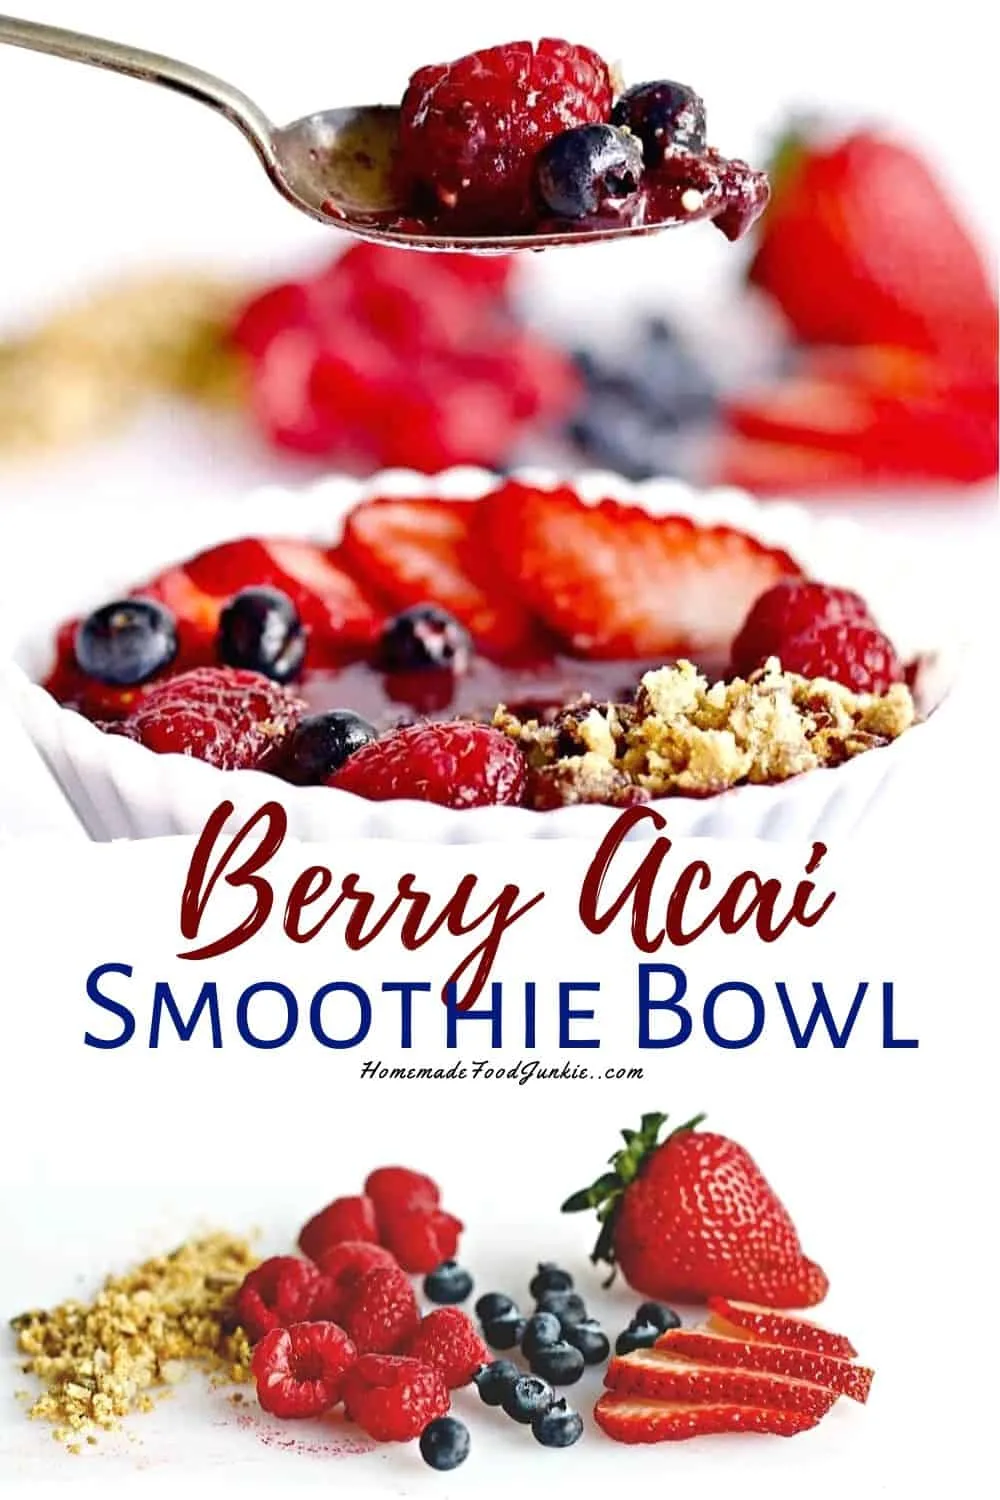 Berry Acai Smoothie Bowl-Pin Image